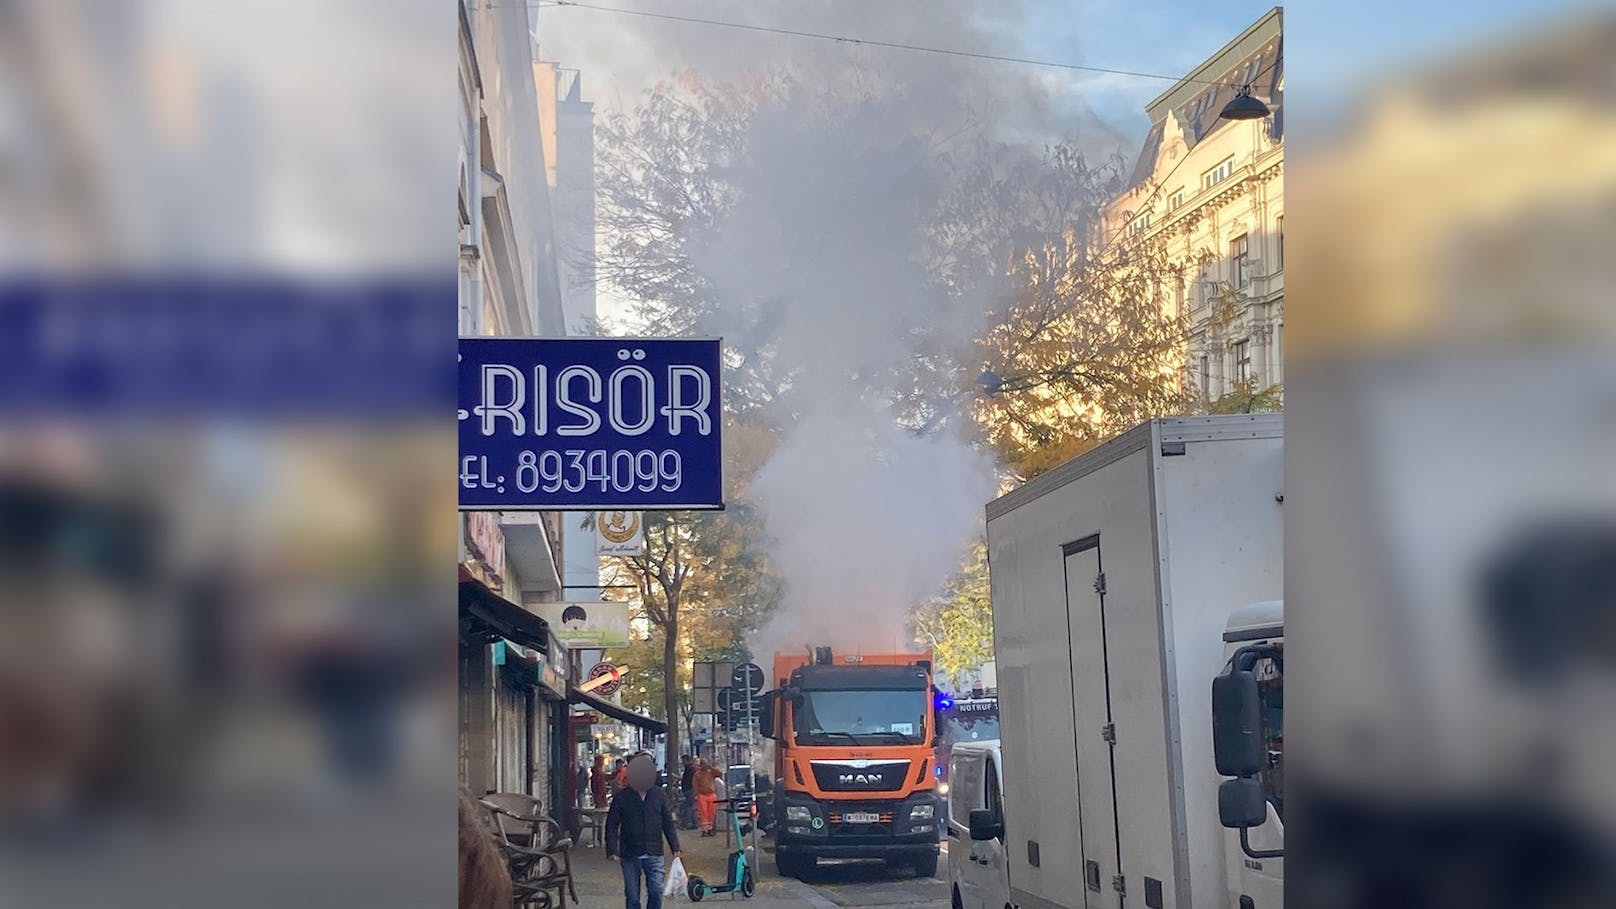 Müllauto auf MaHü in Flammen – Florianis vor Ort